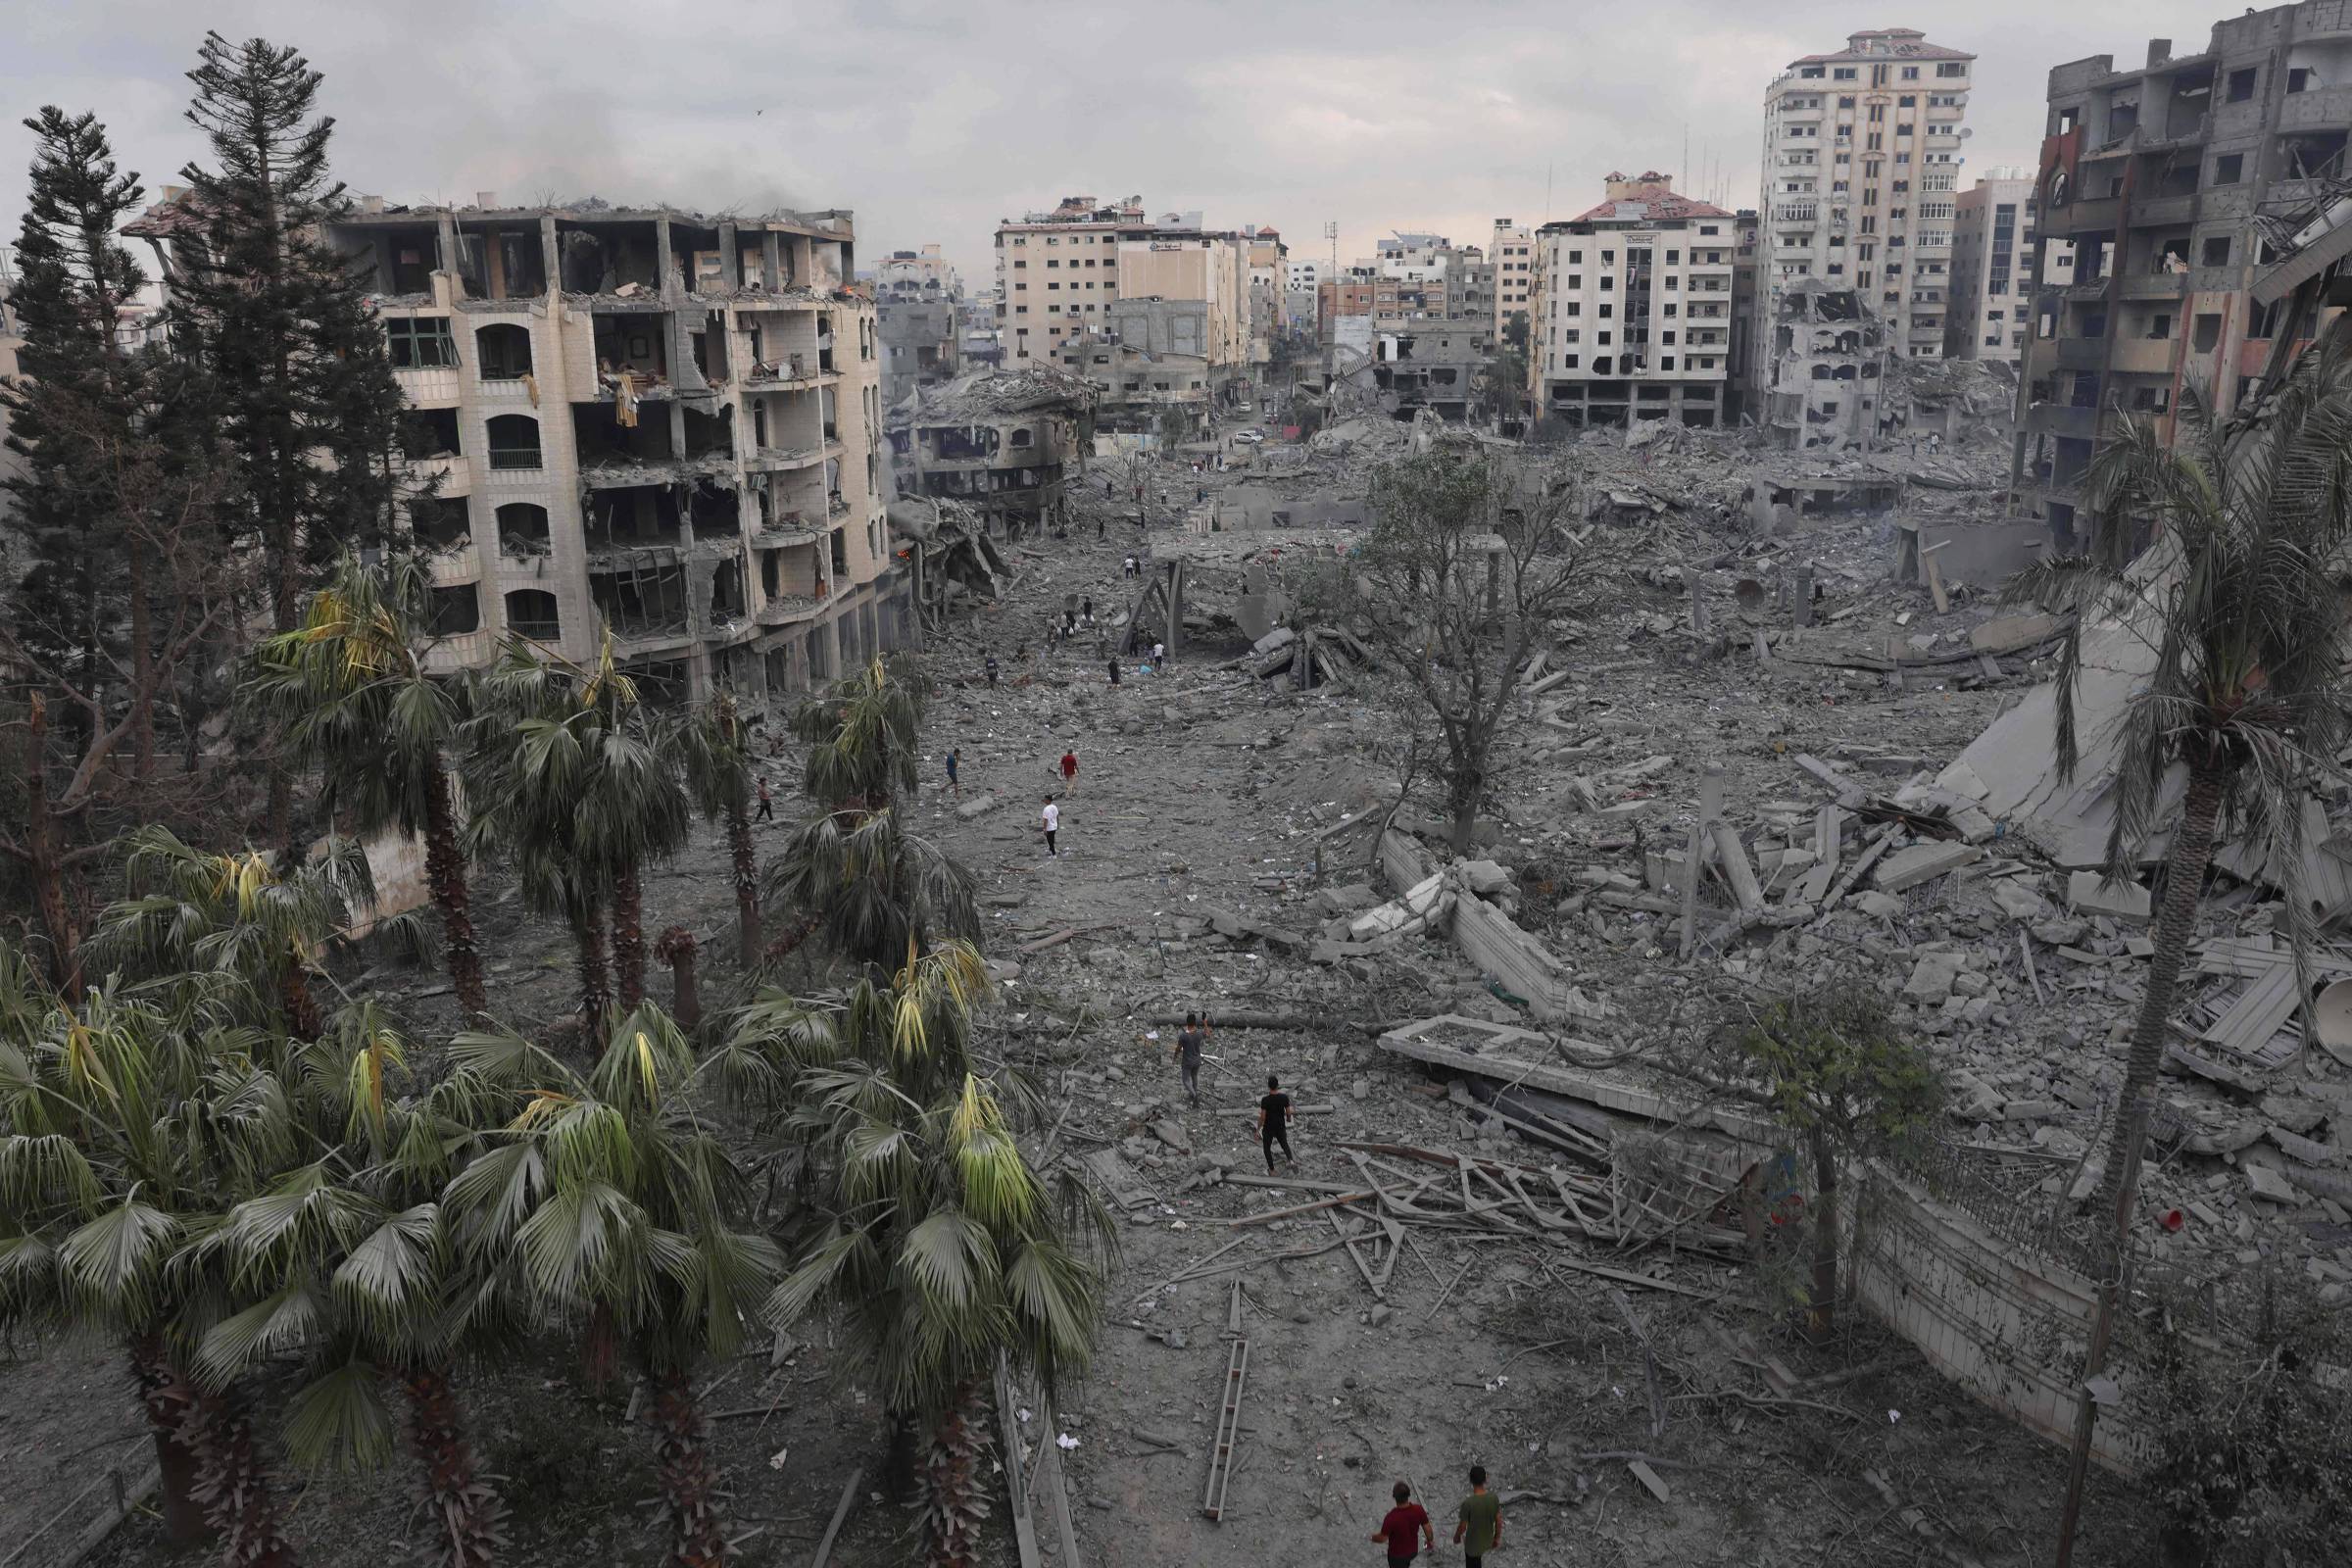 An upscale neighborhood in Gaza City, Rimal was destroyed by Israeli bombings